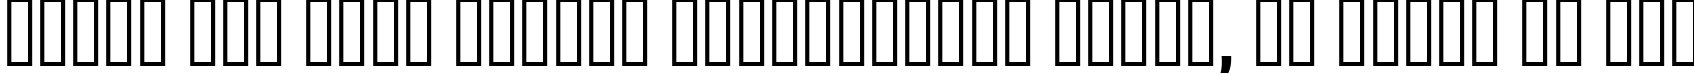 Пример написания шрифтом AntigoniBd   Bold текста на русском